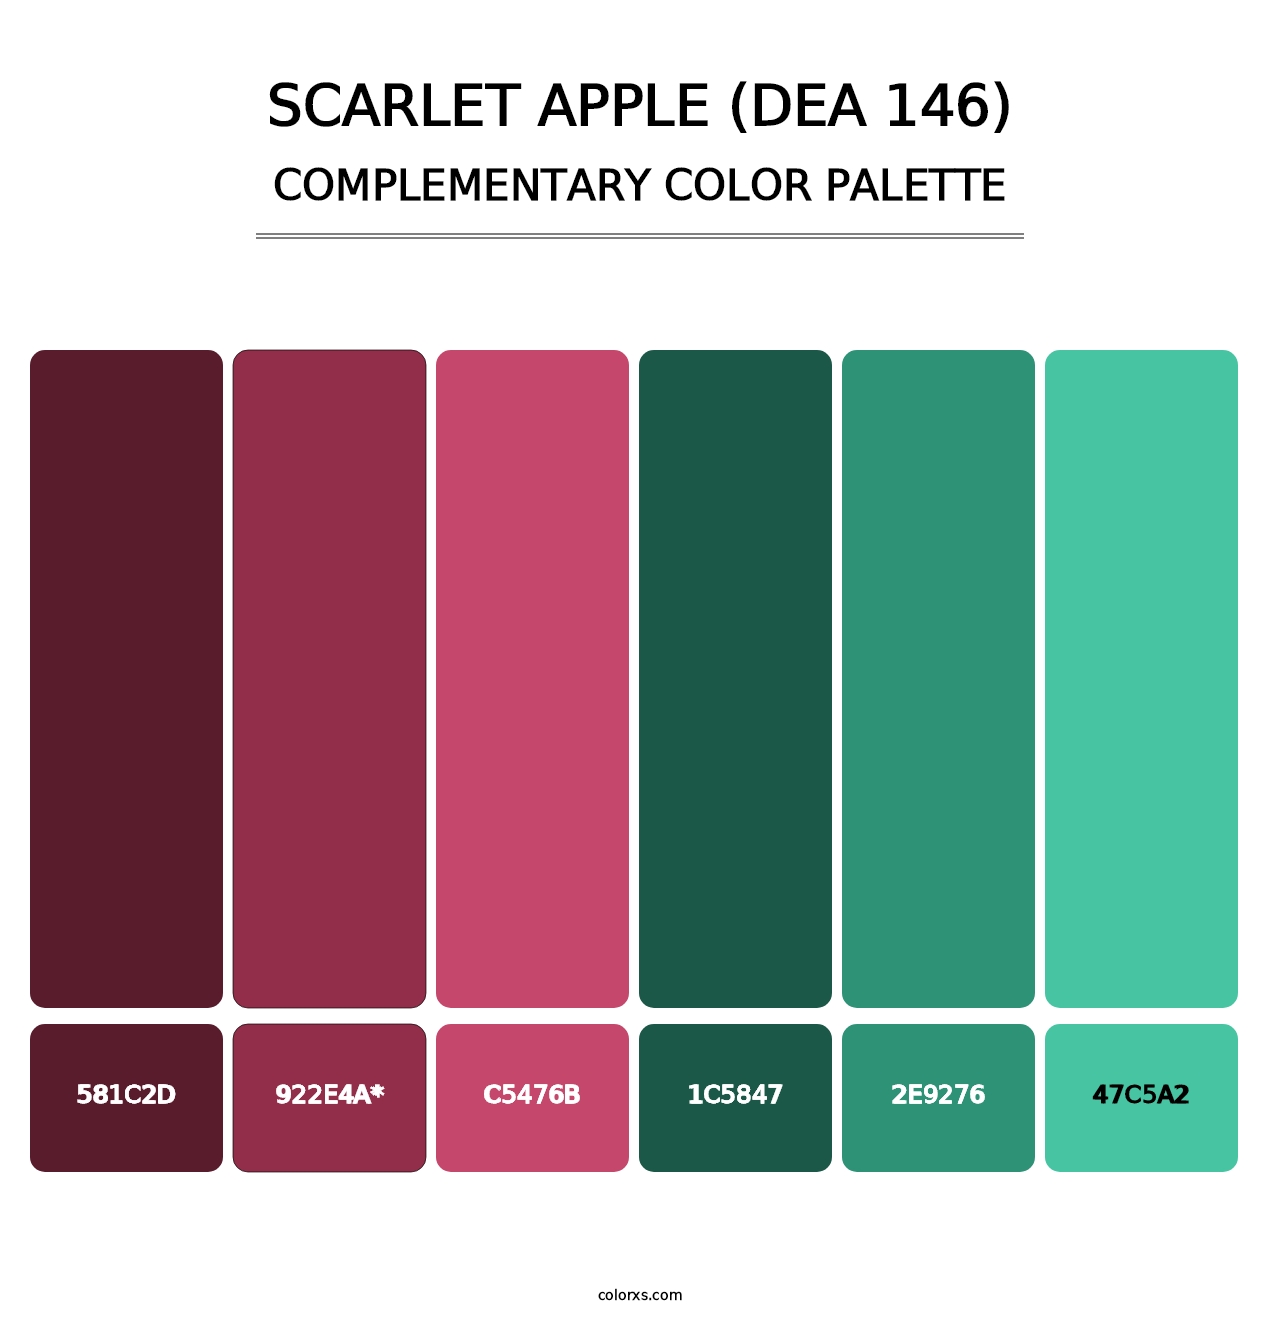 Scarlet Apple (DEA 146) - Complementary Color Palette